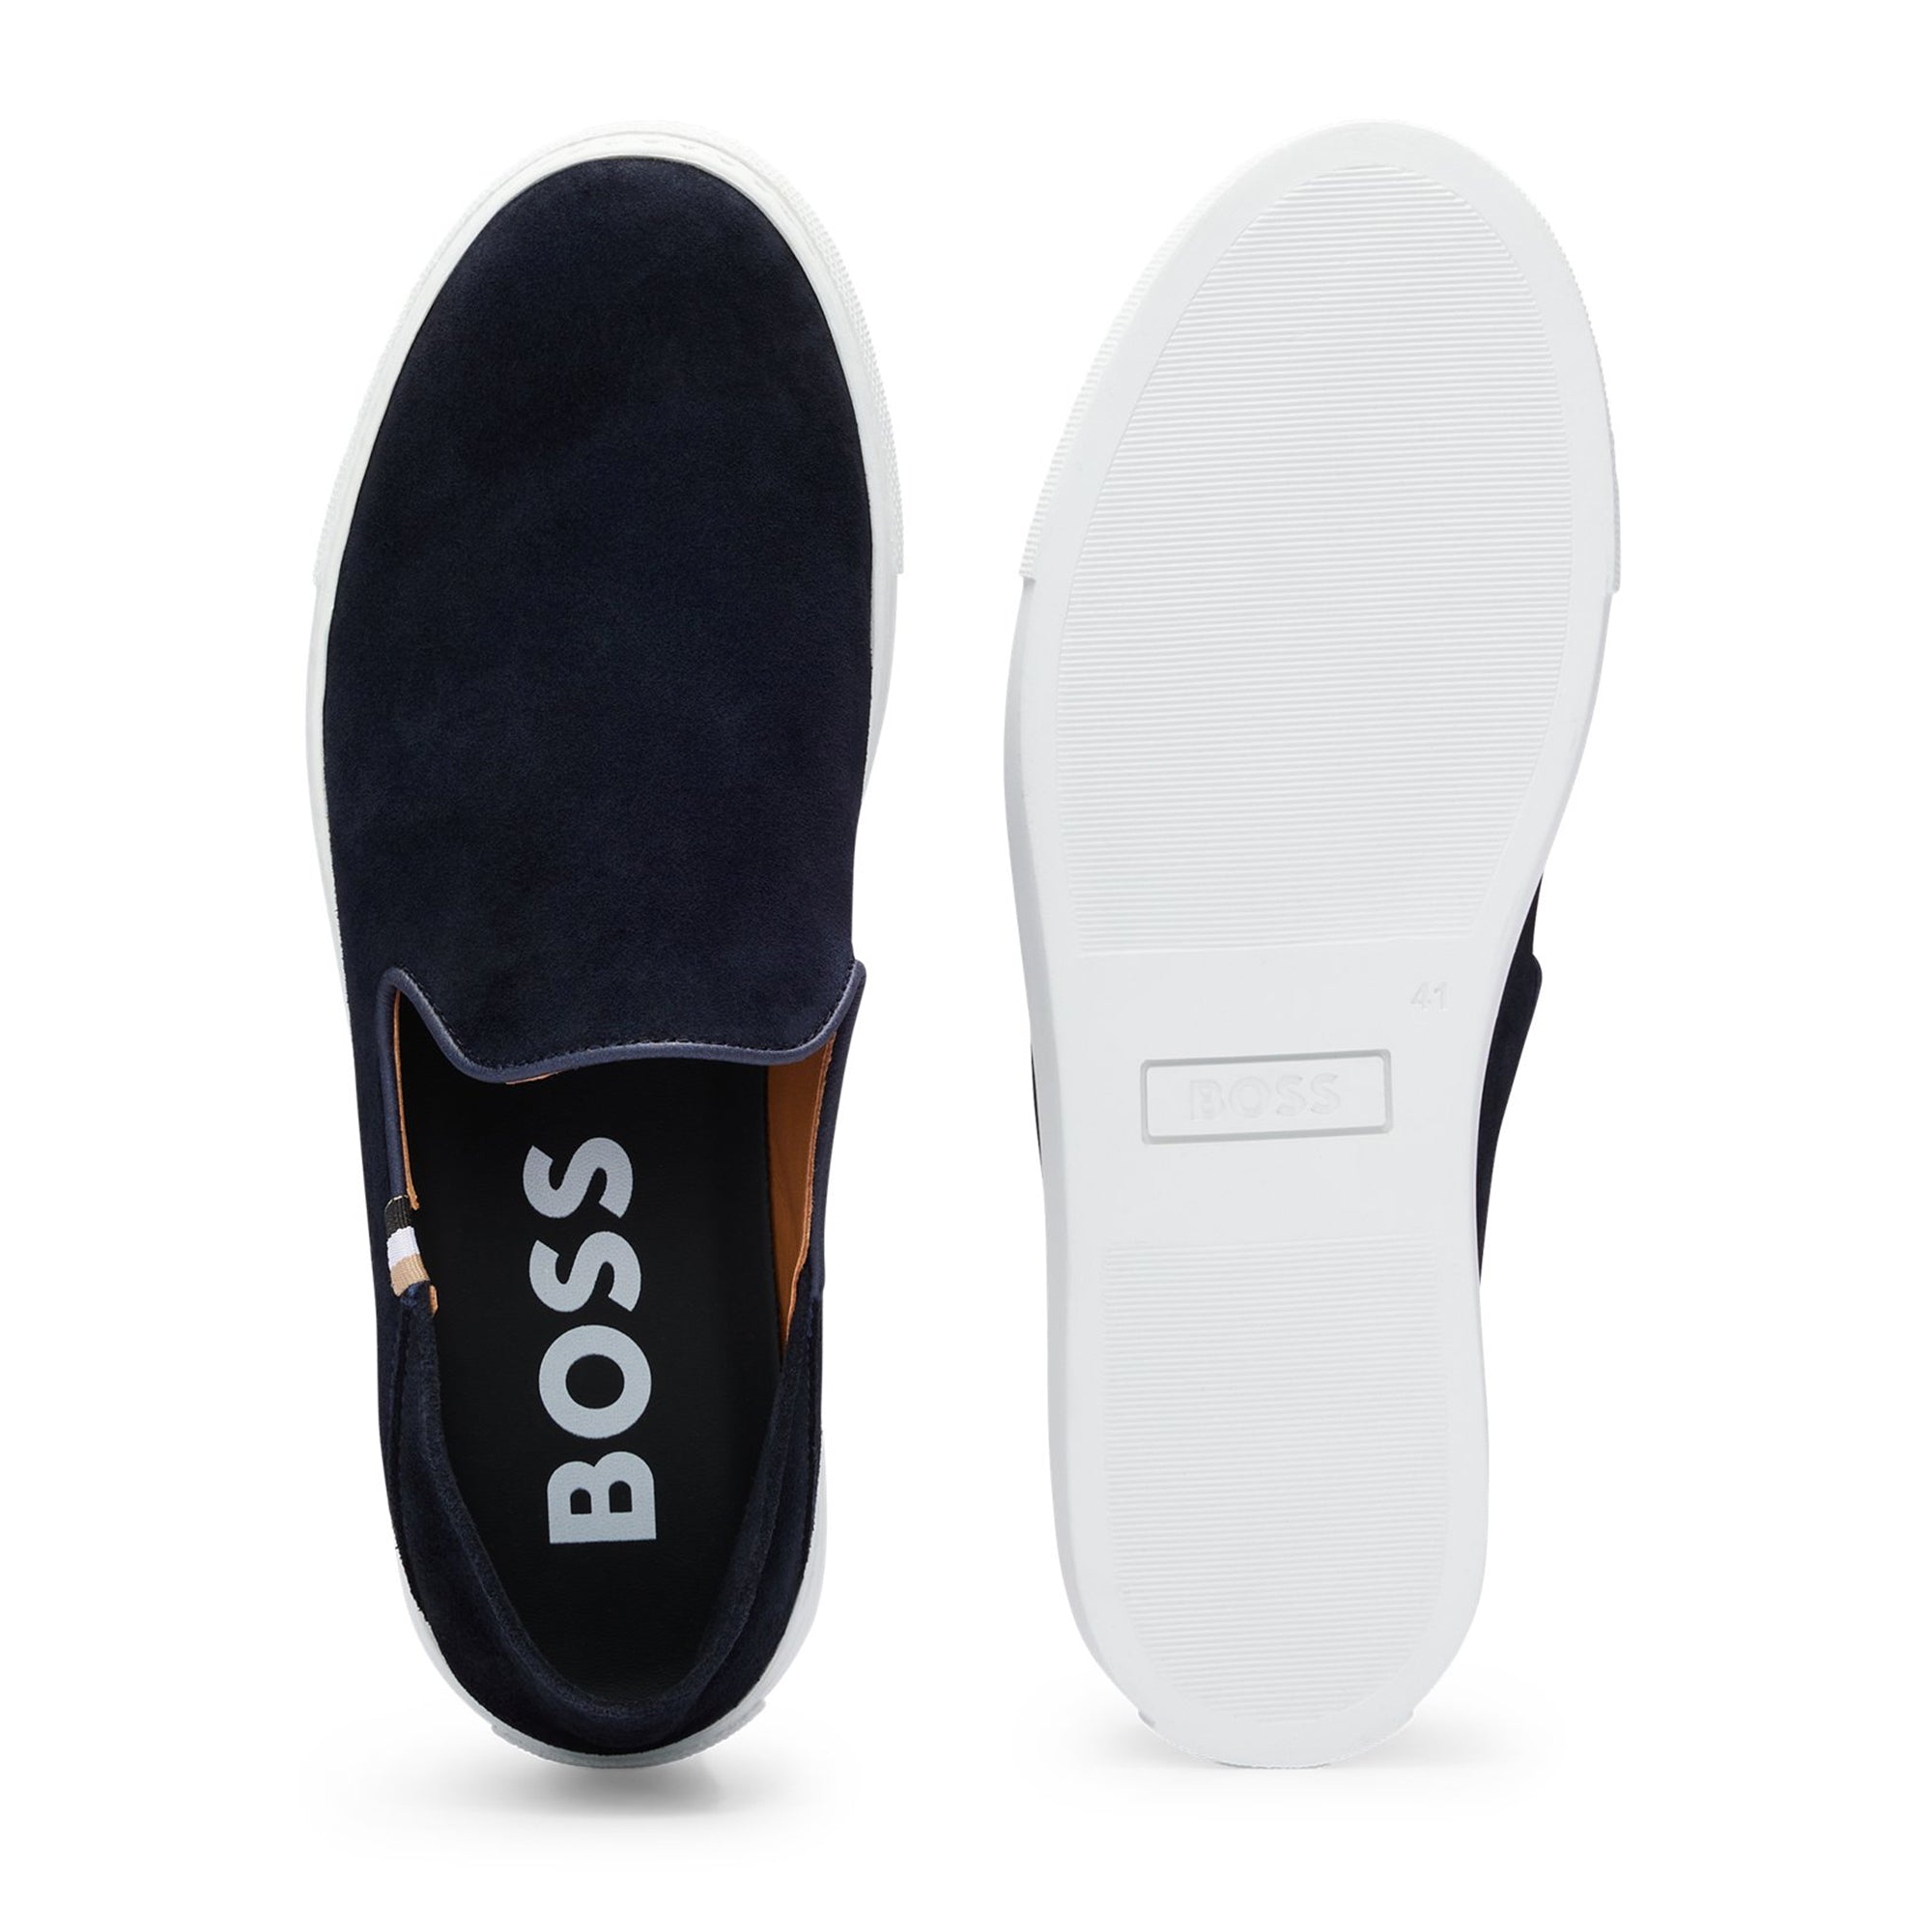 Boss Rey Slon Slip On Shoe - Dark Blue Suede